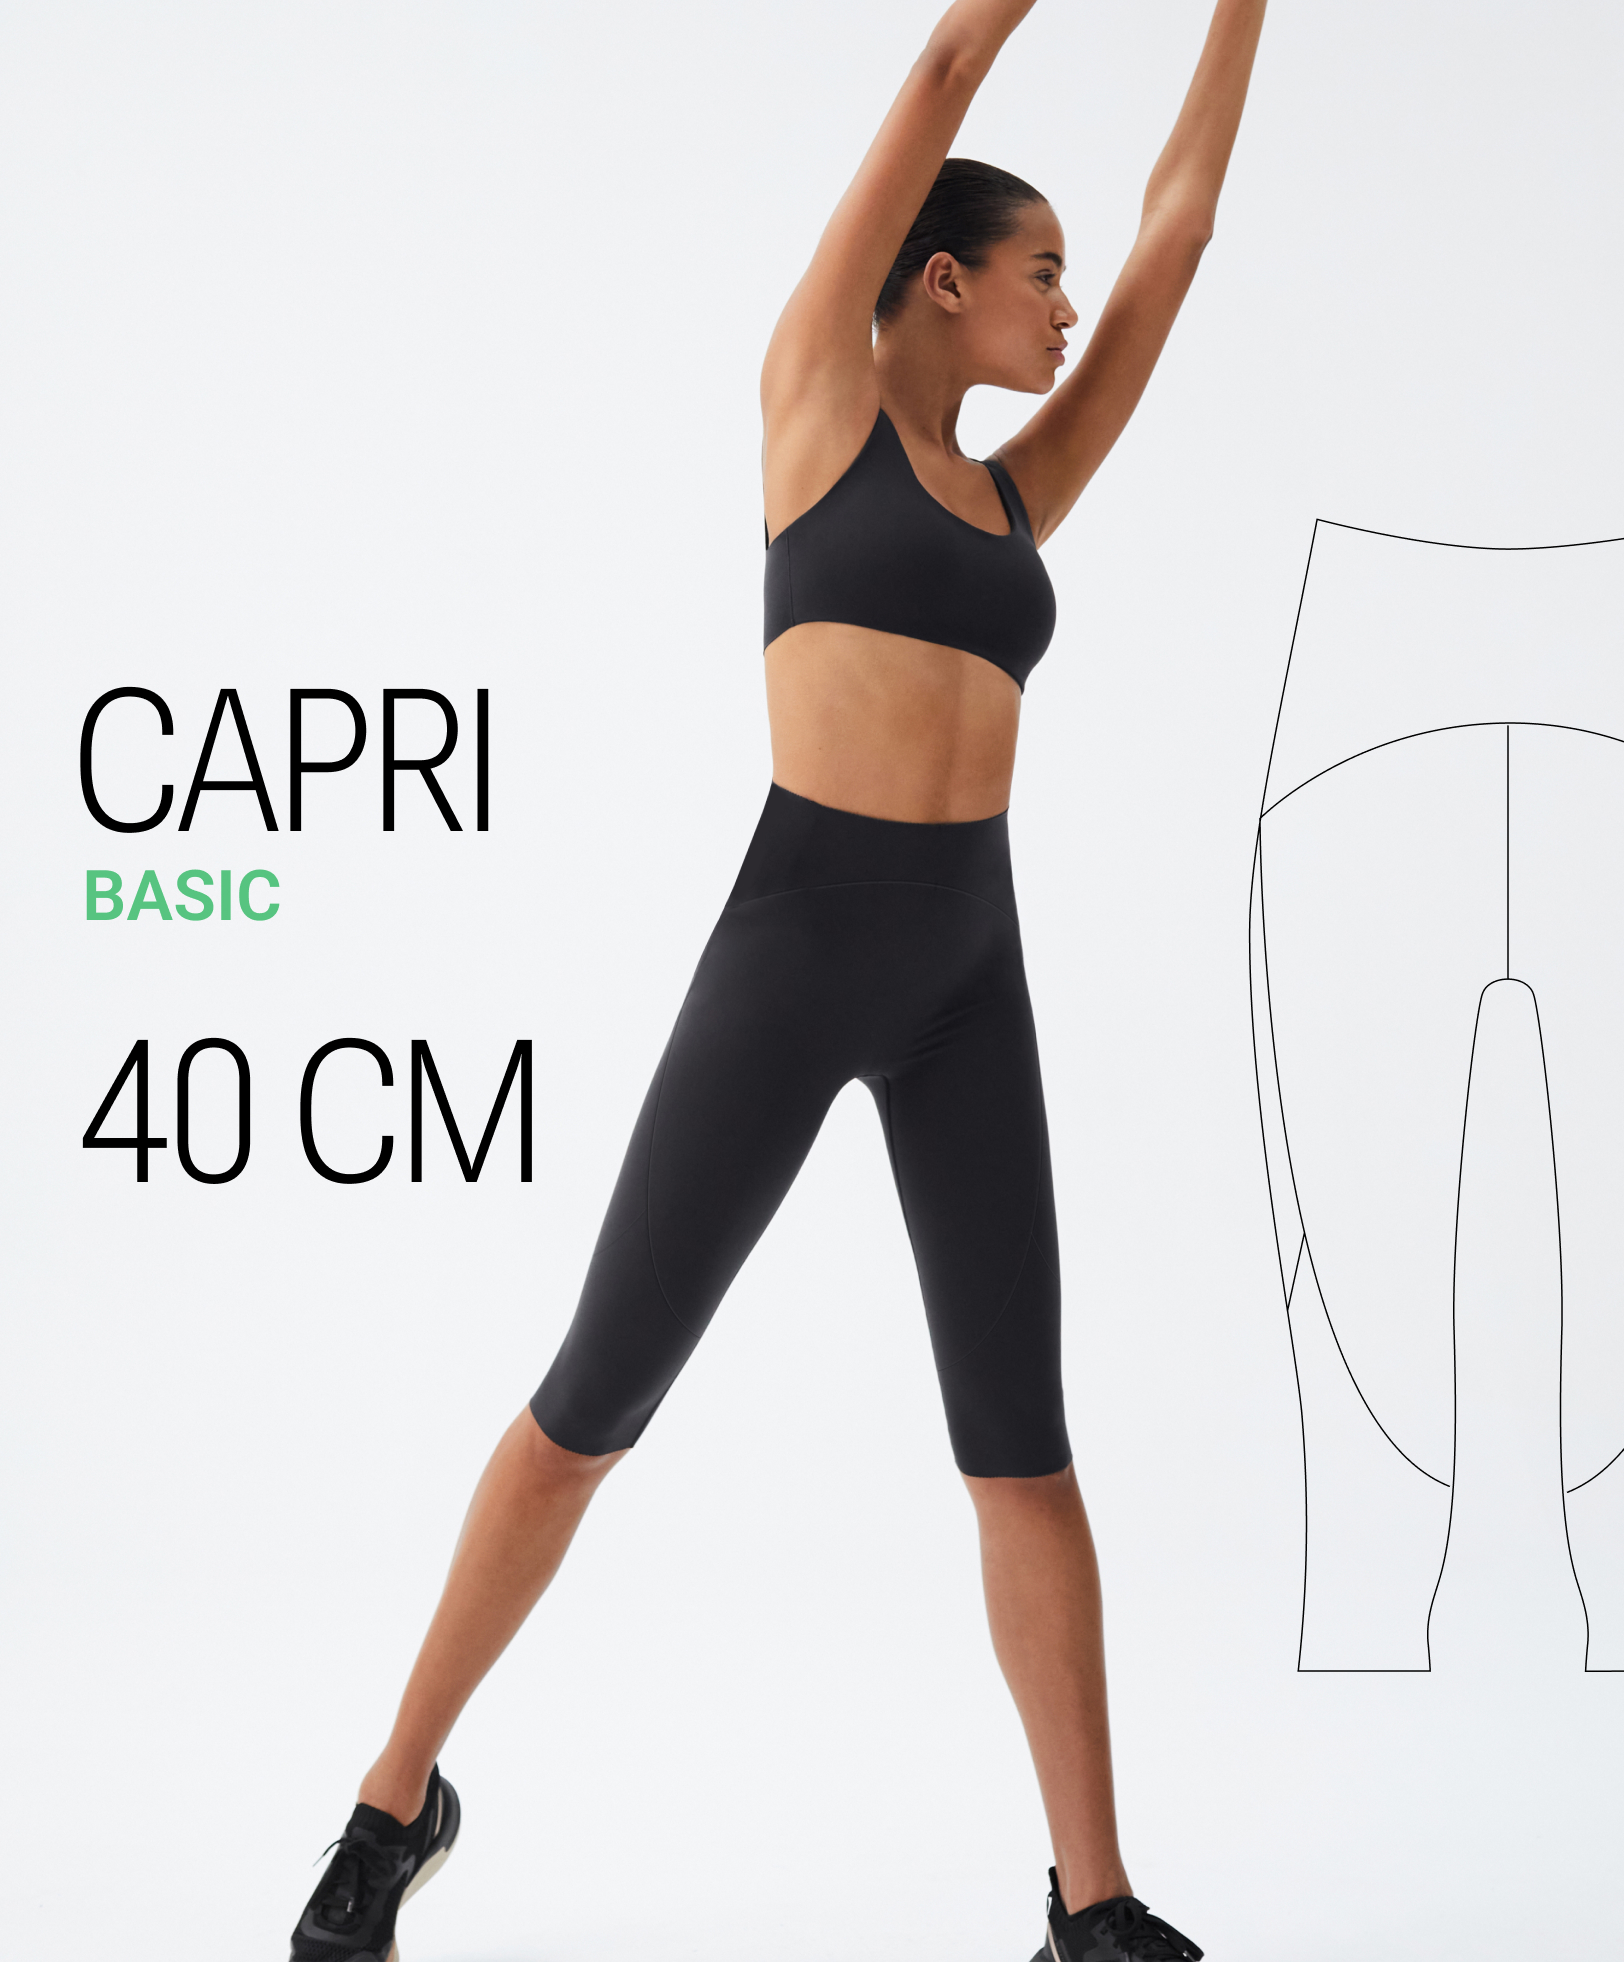 Compressive 40cm capri leggings